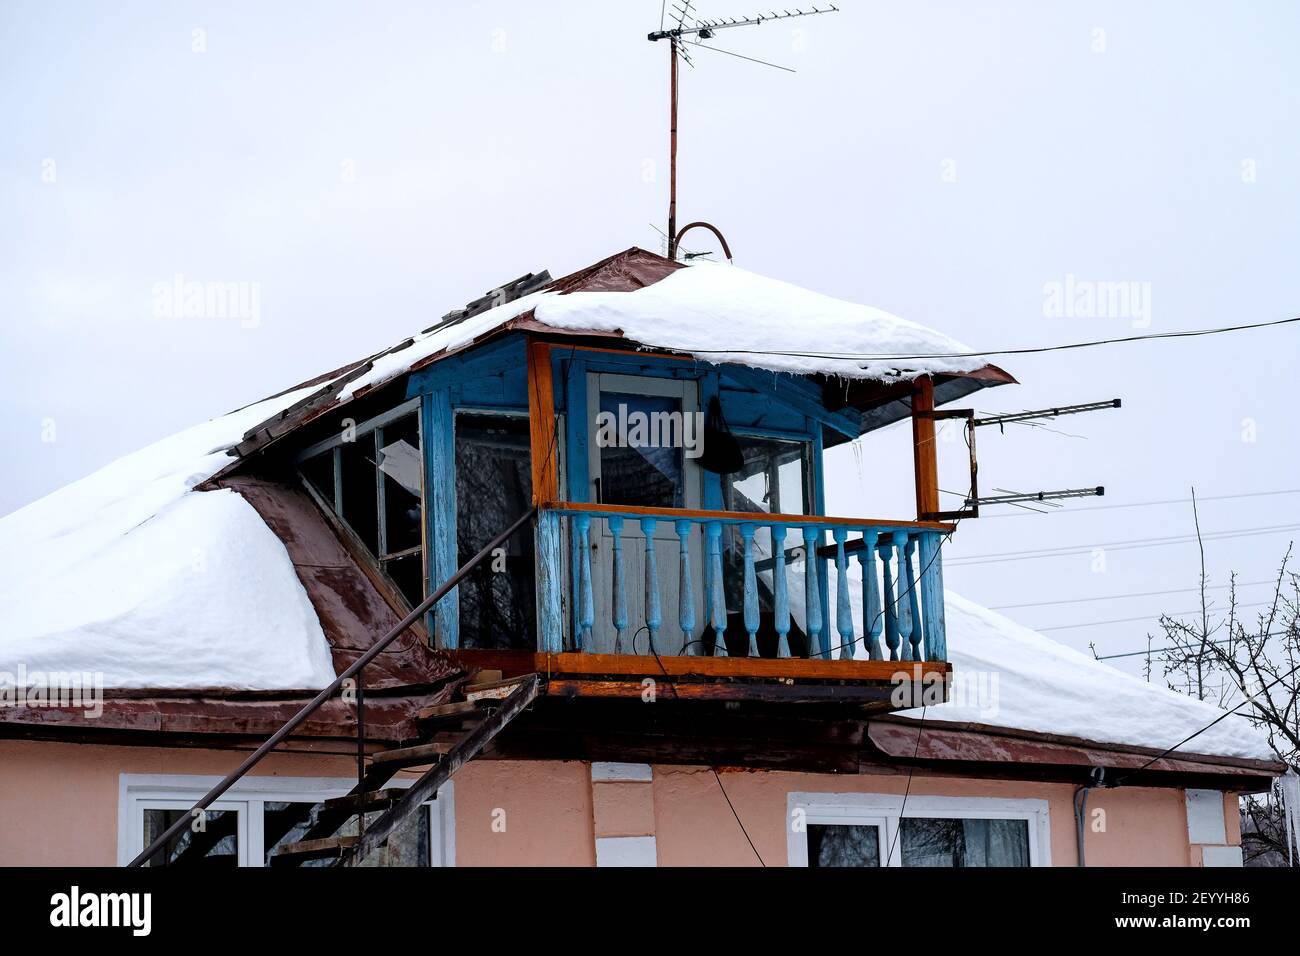 Bashkiria, Russie - 01.30.2021: Ancien balcon décré ouvert dans le village russe. Superstructure sur la maison. Ciel d'hiver flou tout autour. Banque D'Images